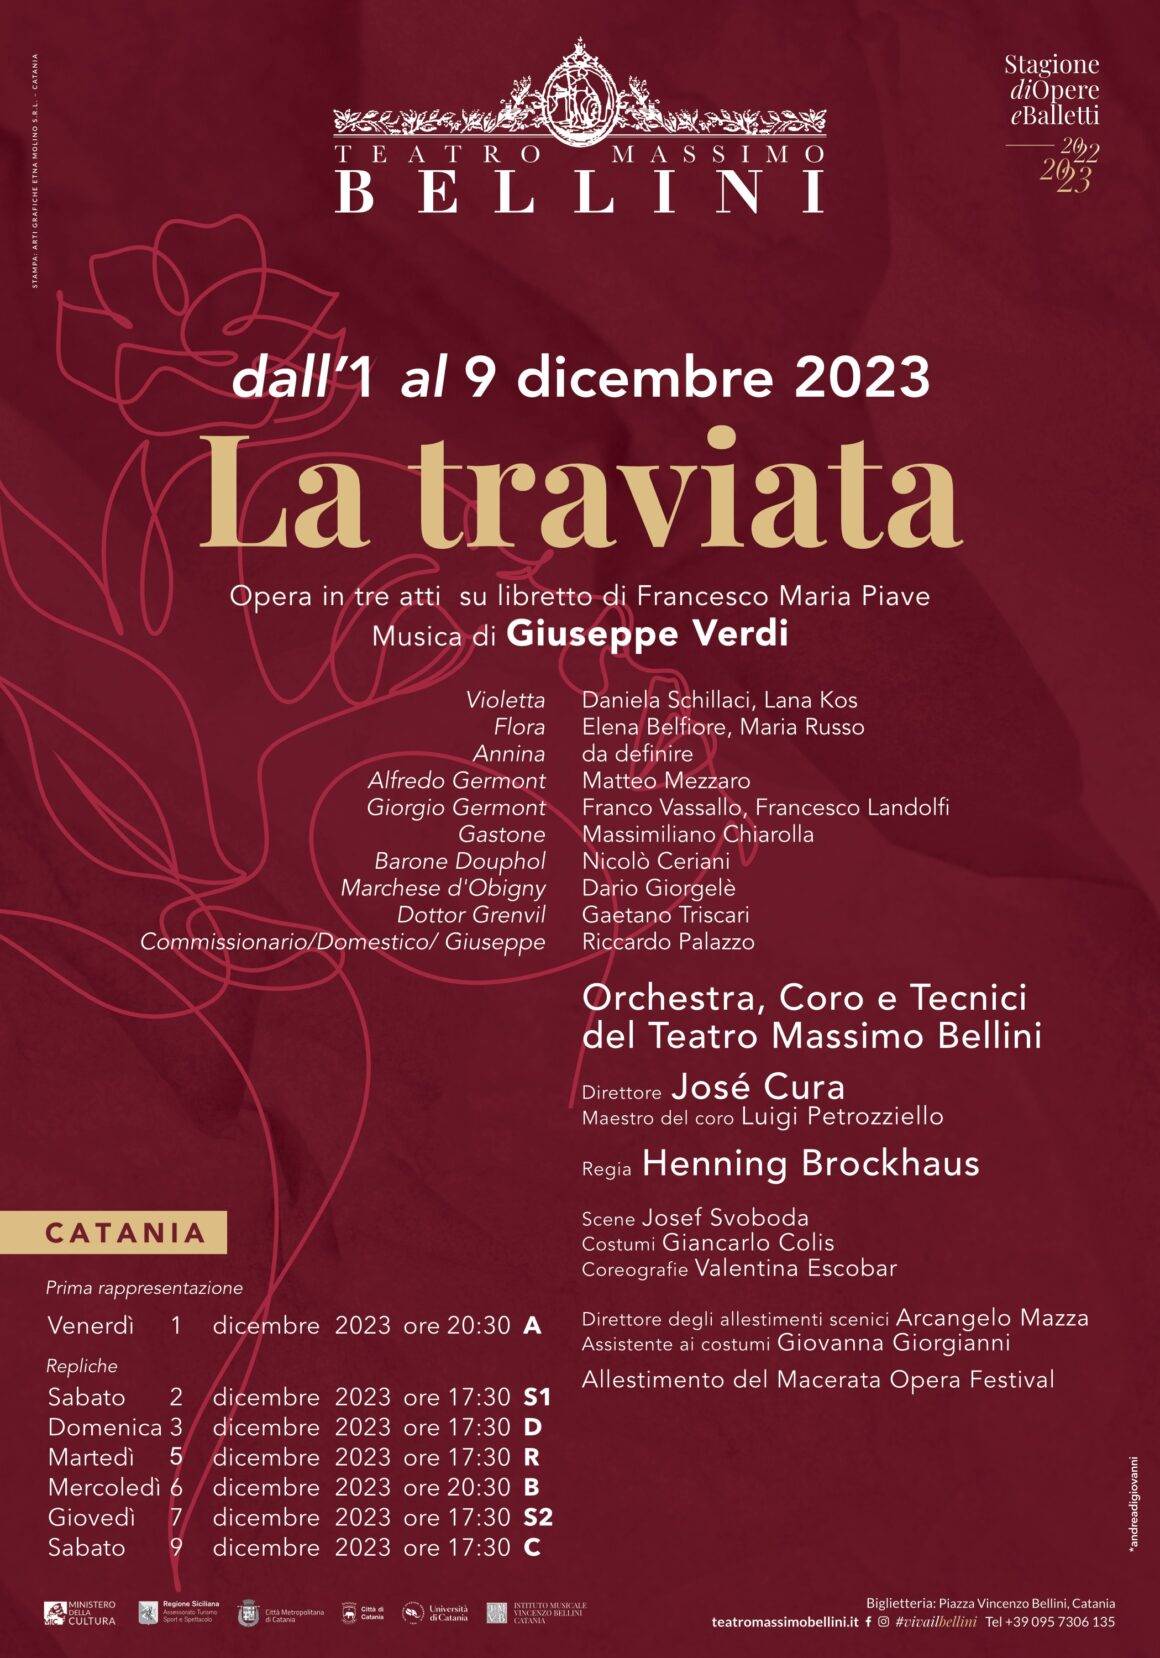 “La traviata”  dall’1 al 9 dicembre